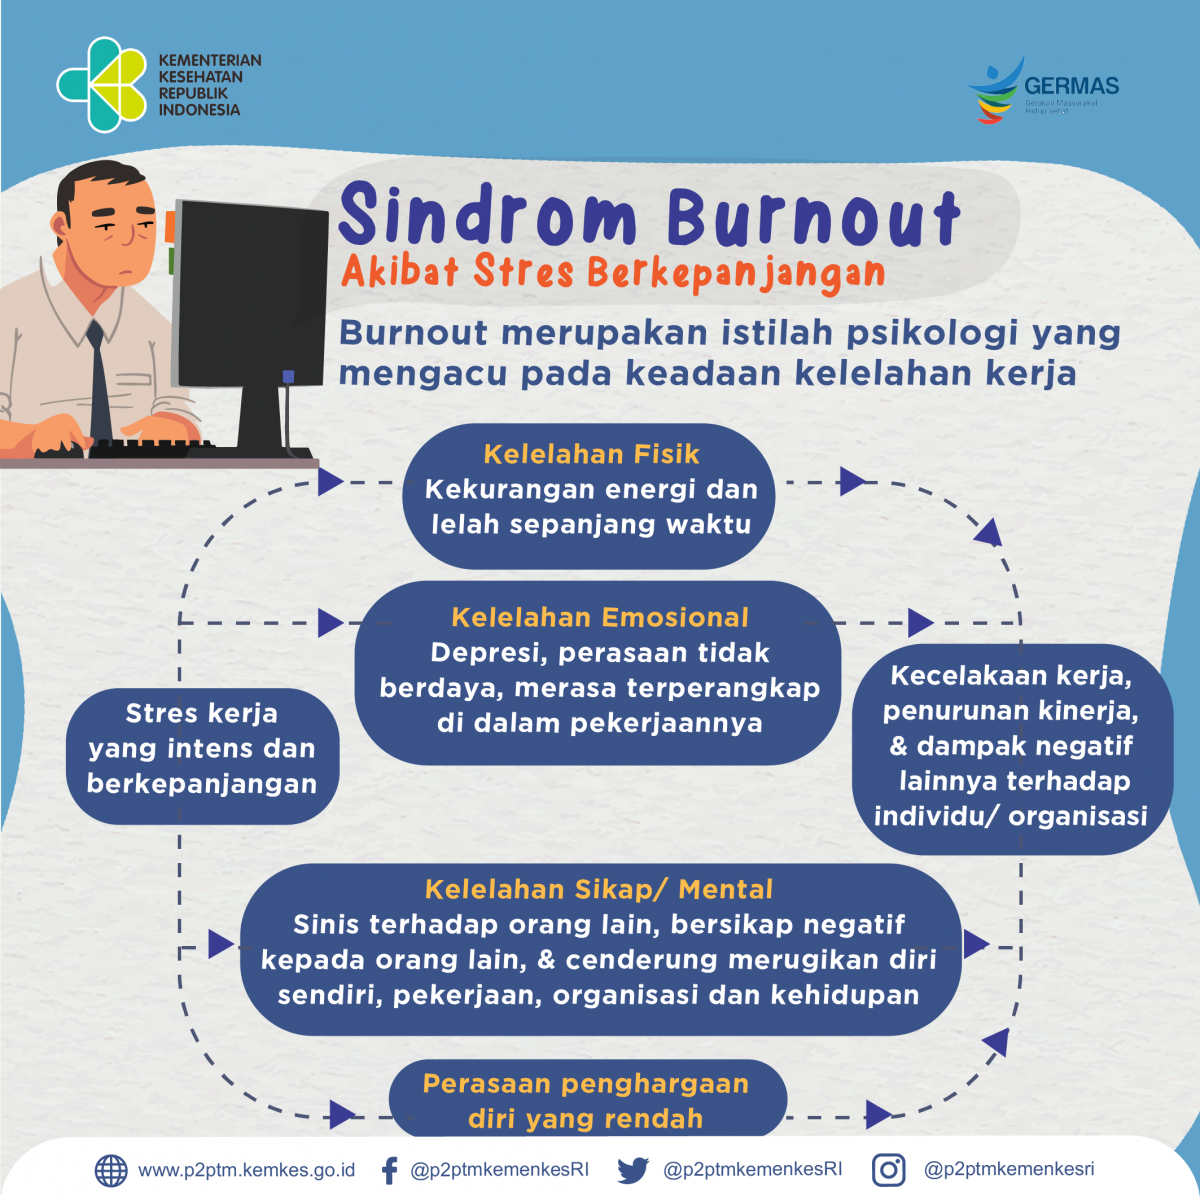 Apa itu Sindrom Burnout?